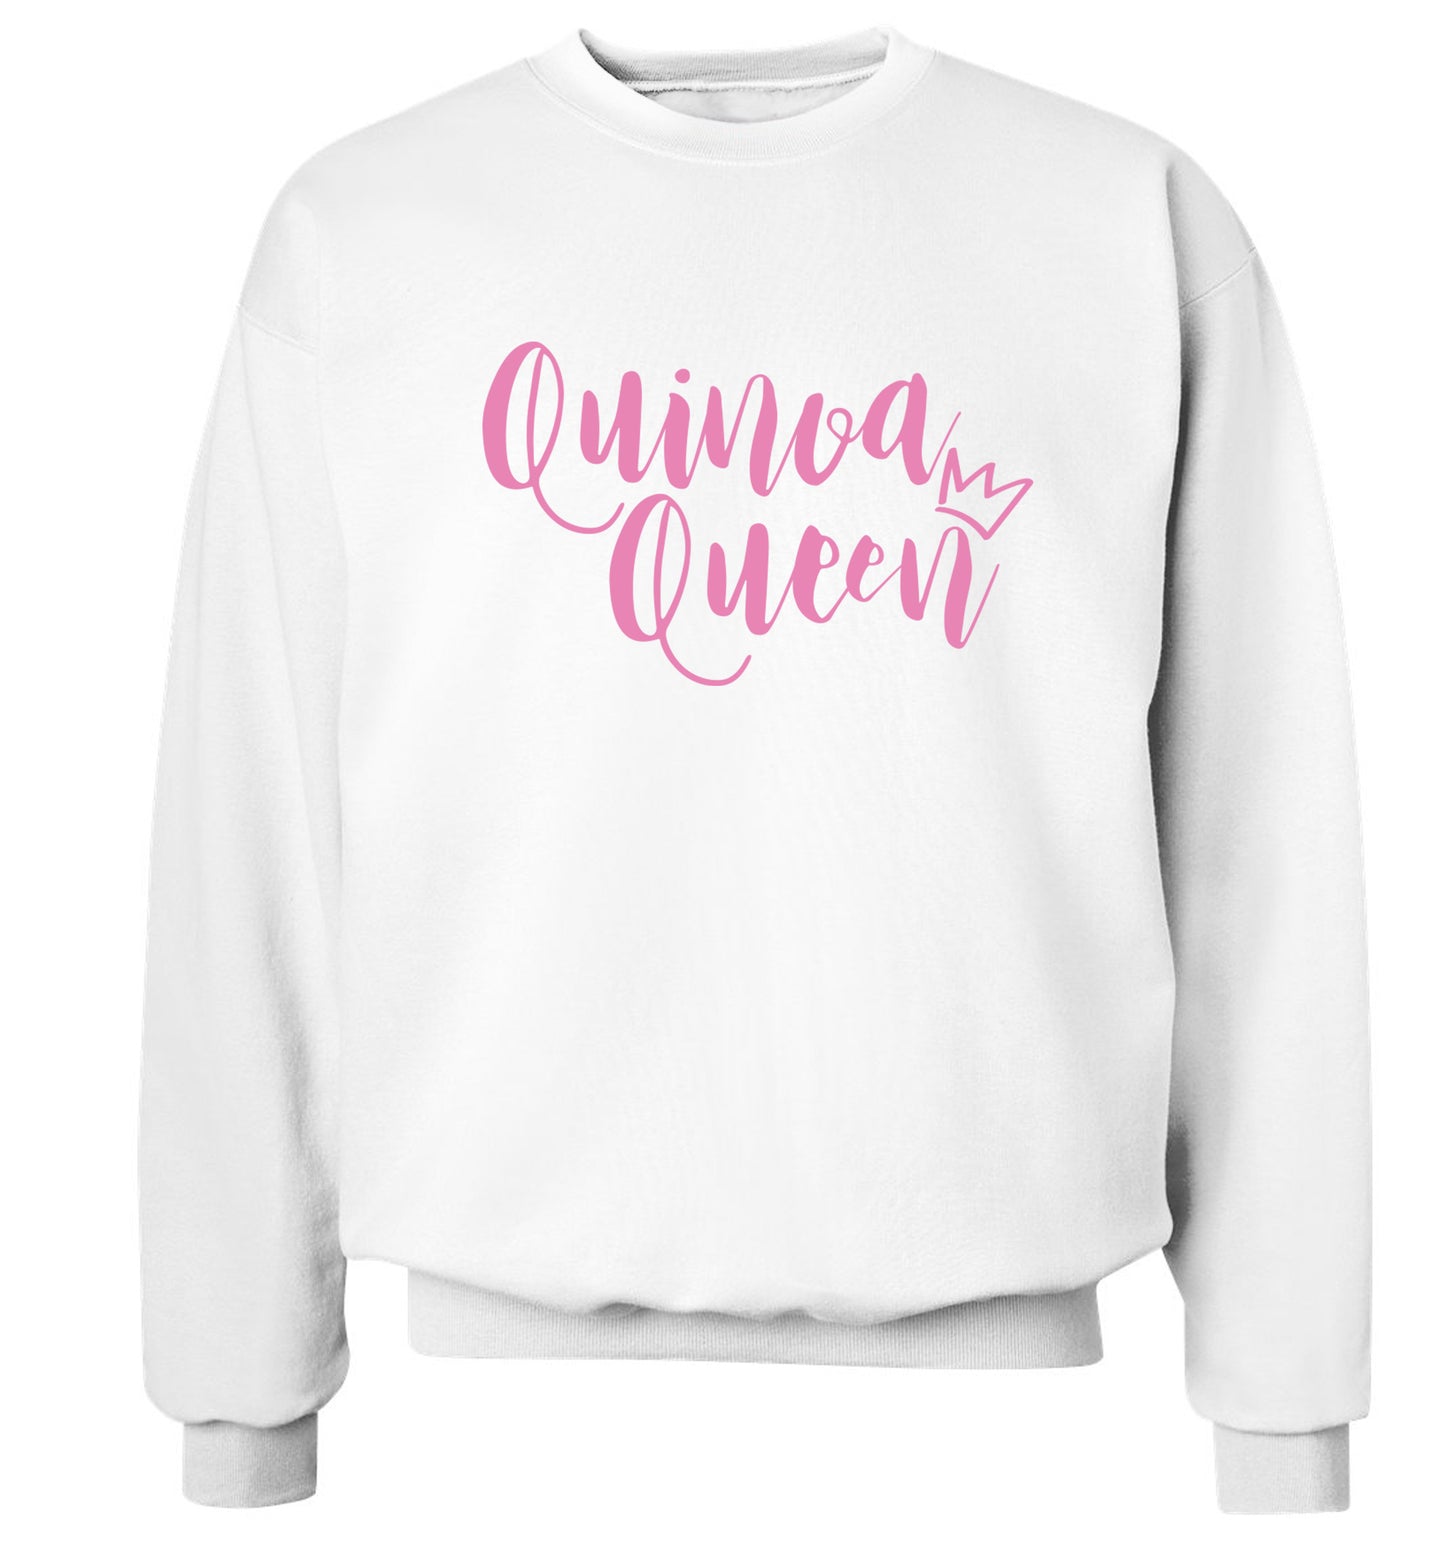 Quinoa Queen Adult's unisex white  sweater 2XL